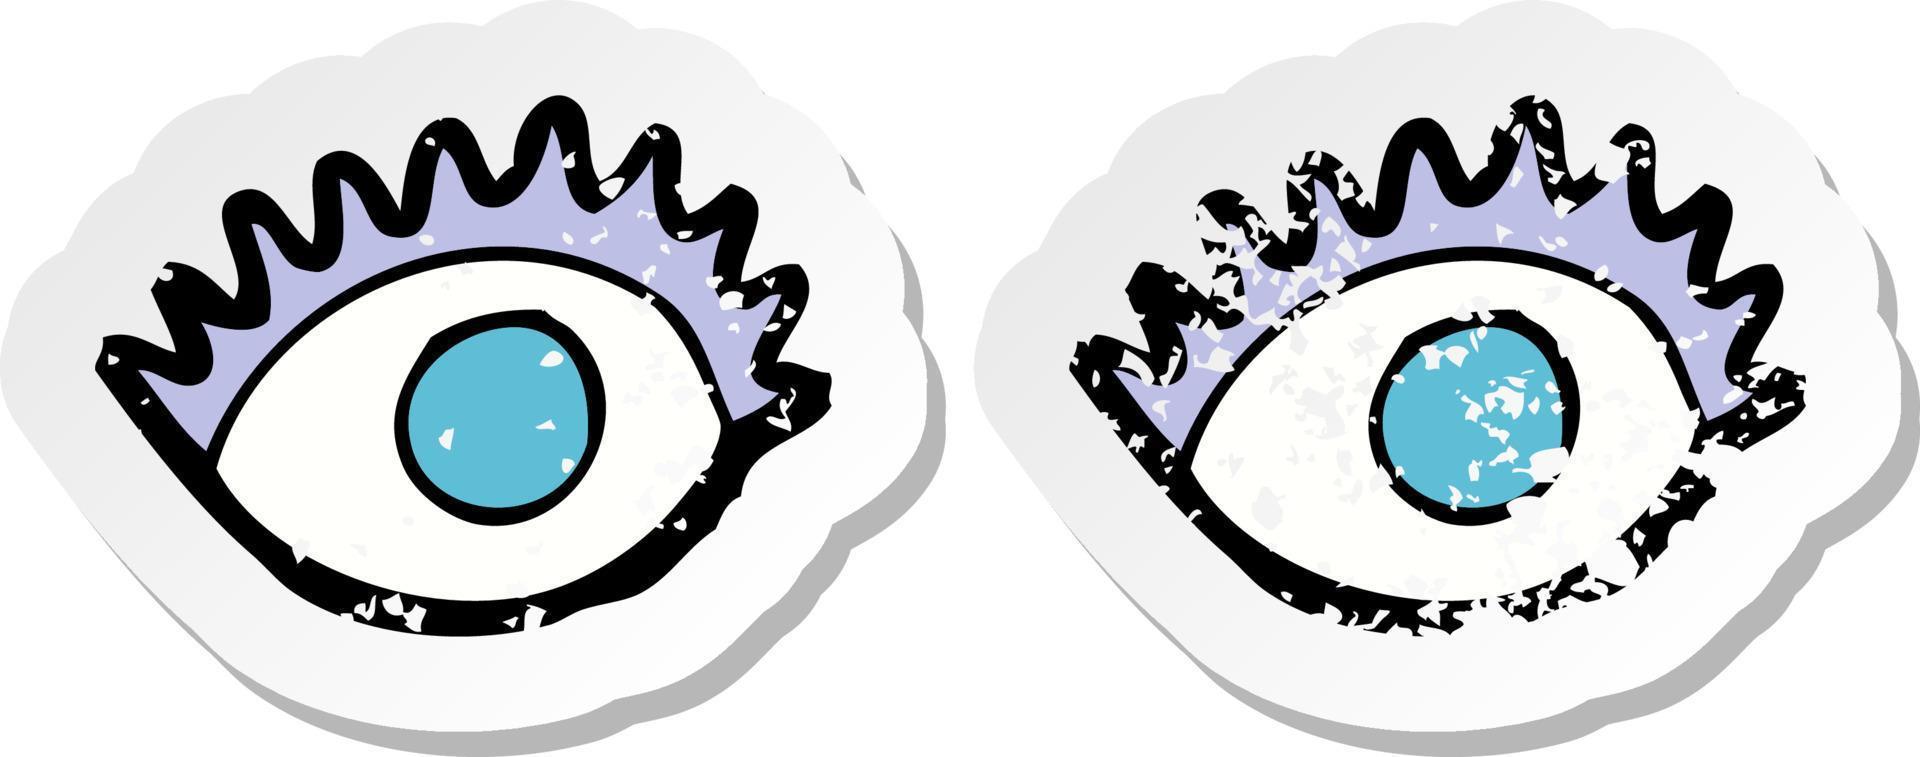 Retro-Distressed-Aufkleber von Cartoon-Augen vektor